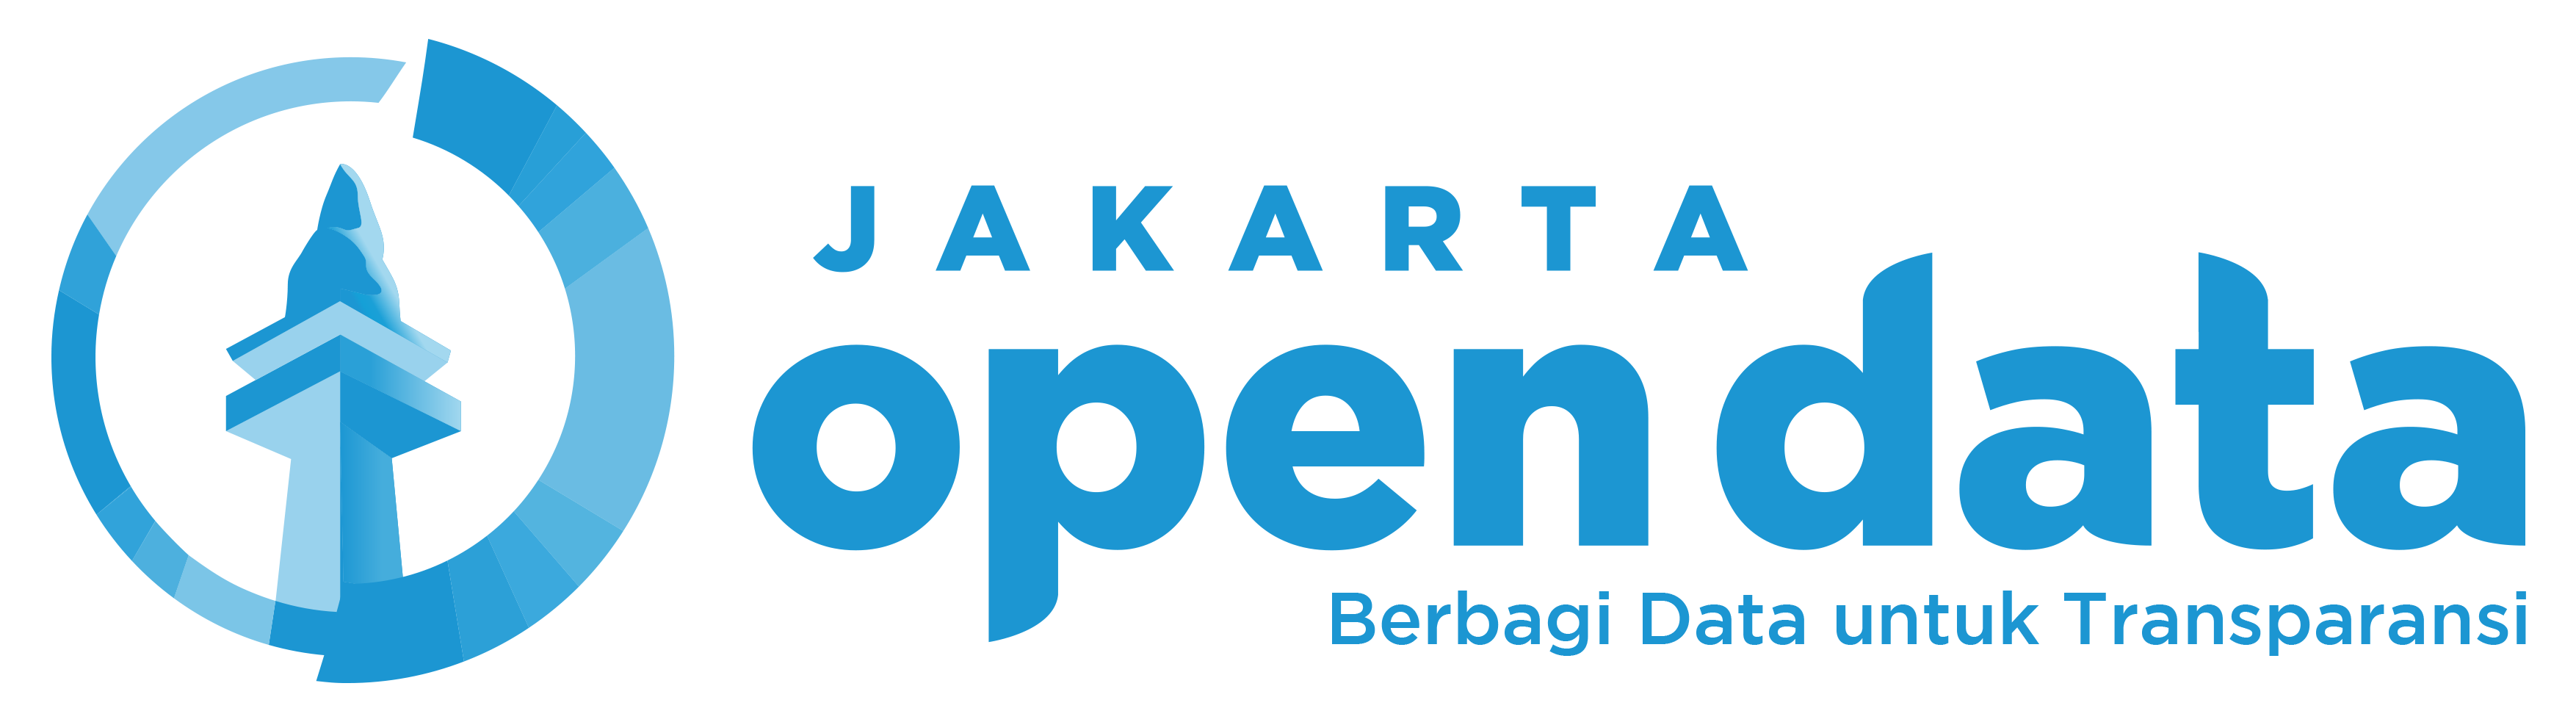 Jakarta Open Data